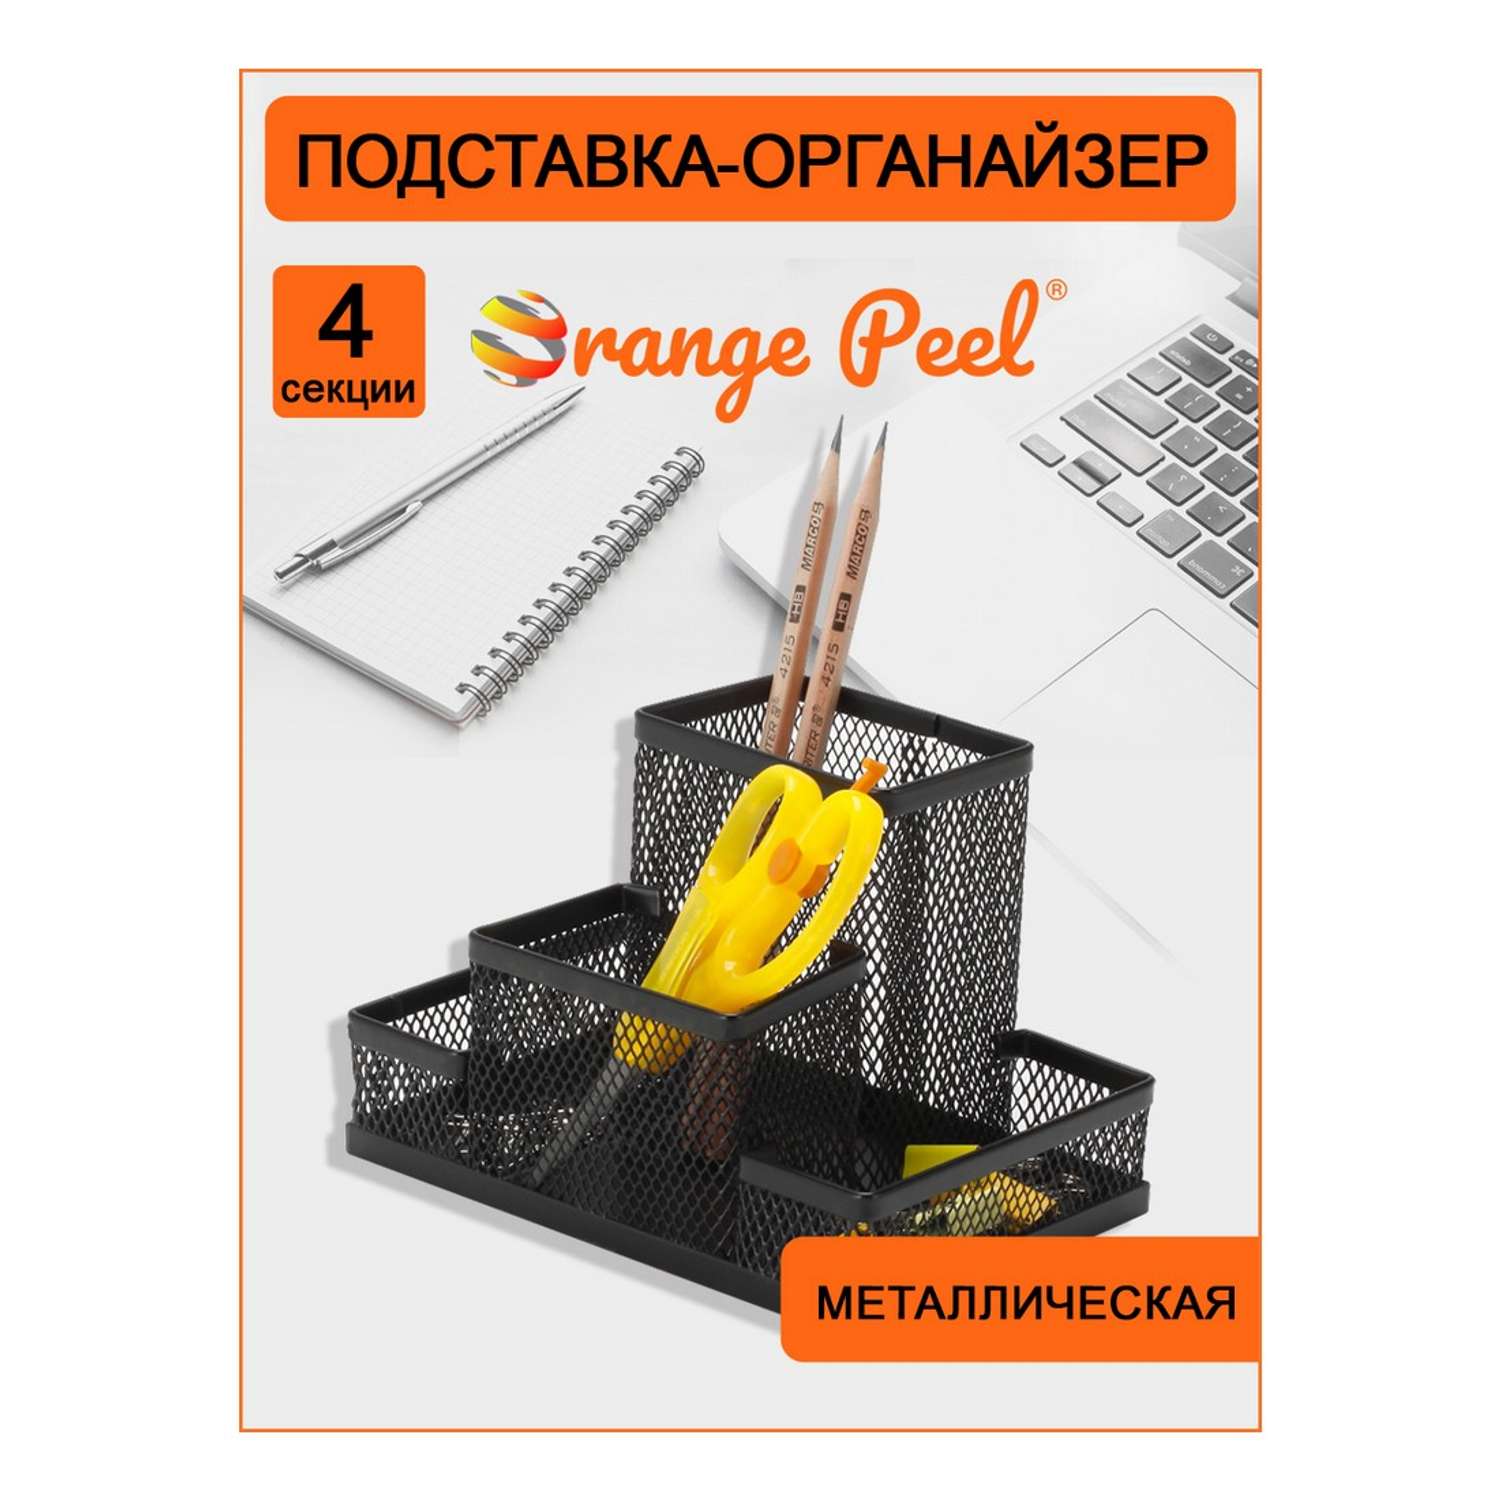 Подставка-органайзер Orange Peel для канцелярии металлическая черная. 4 секции - фото 2